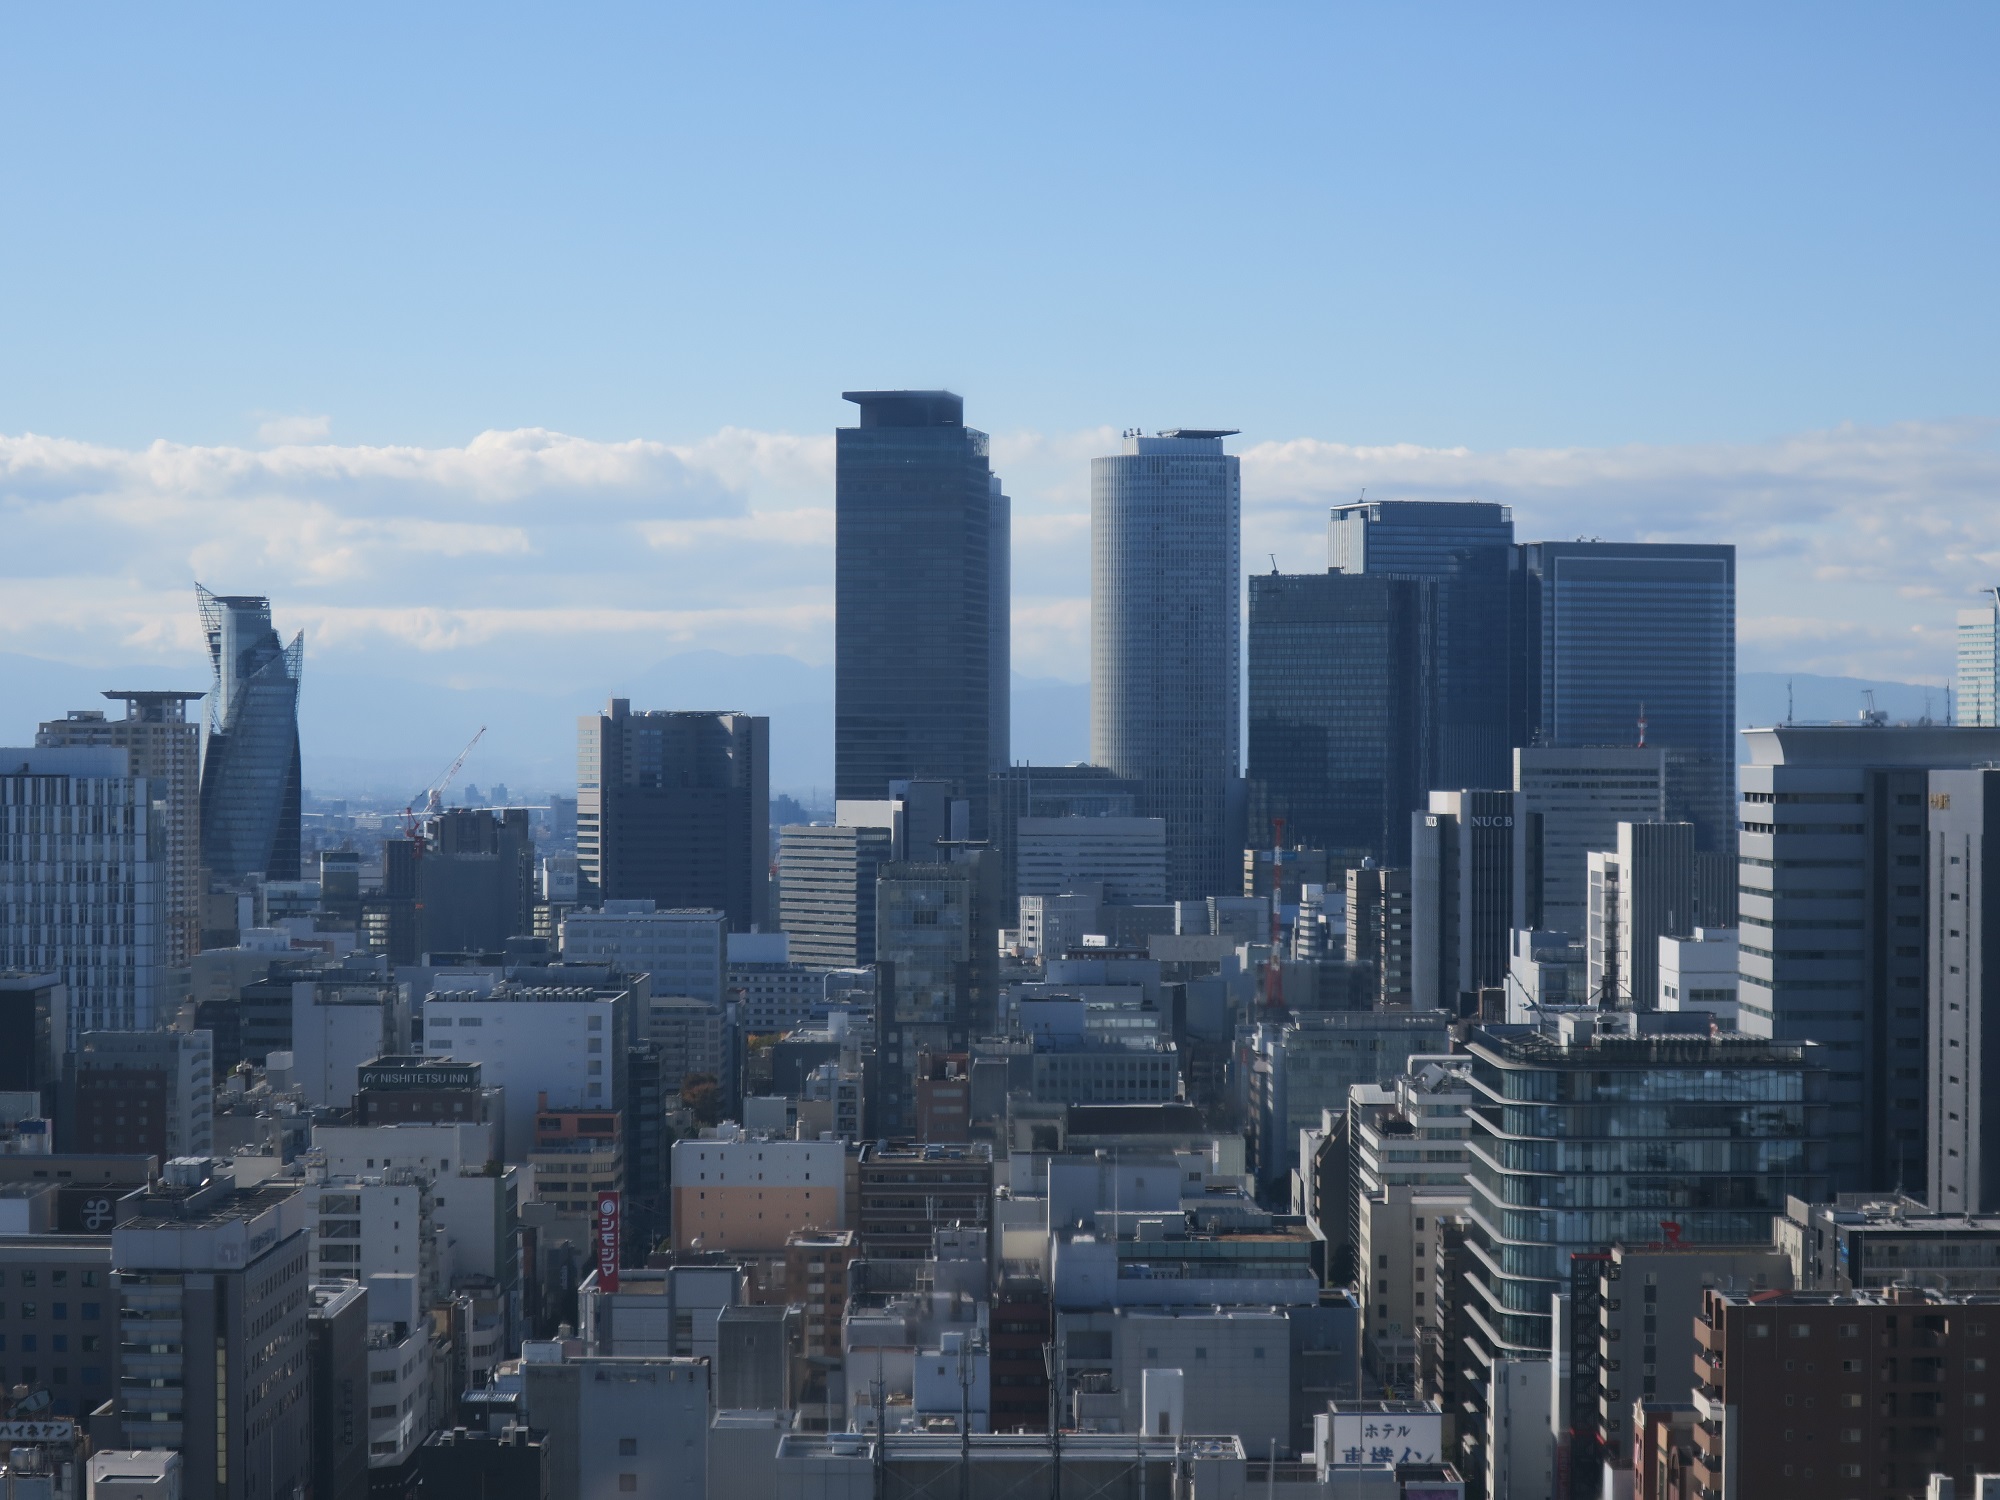 名古屋駅前とその周辺 名古屋テレビ塔の展望台から撮影